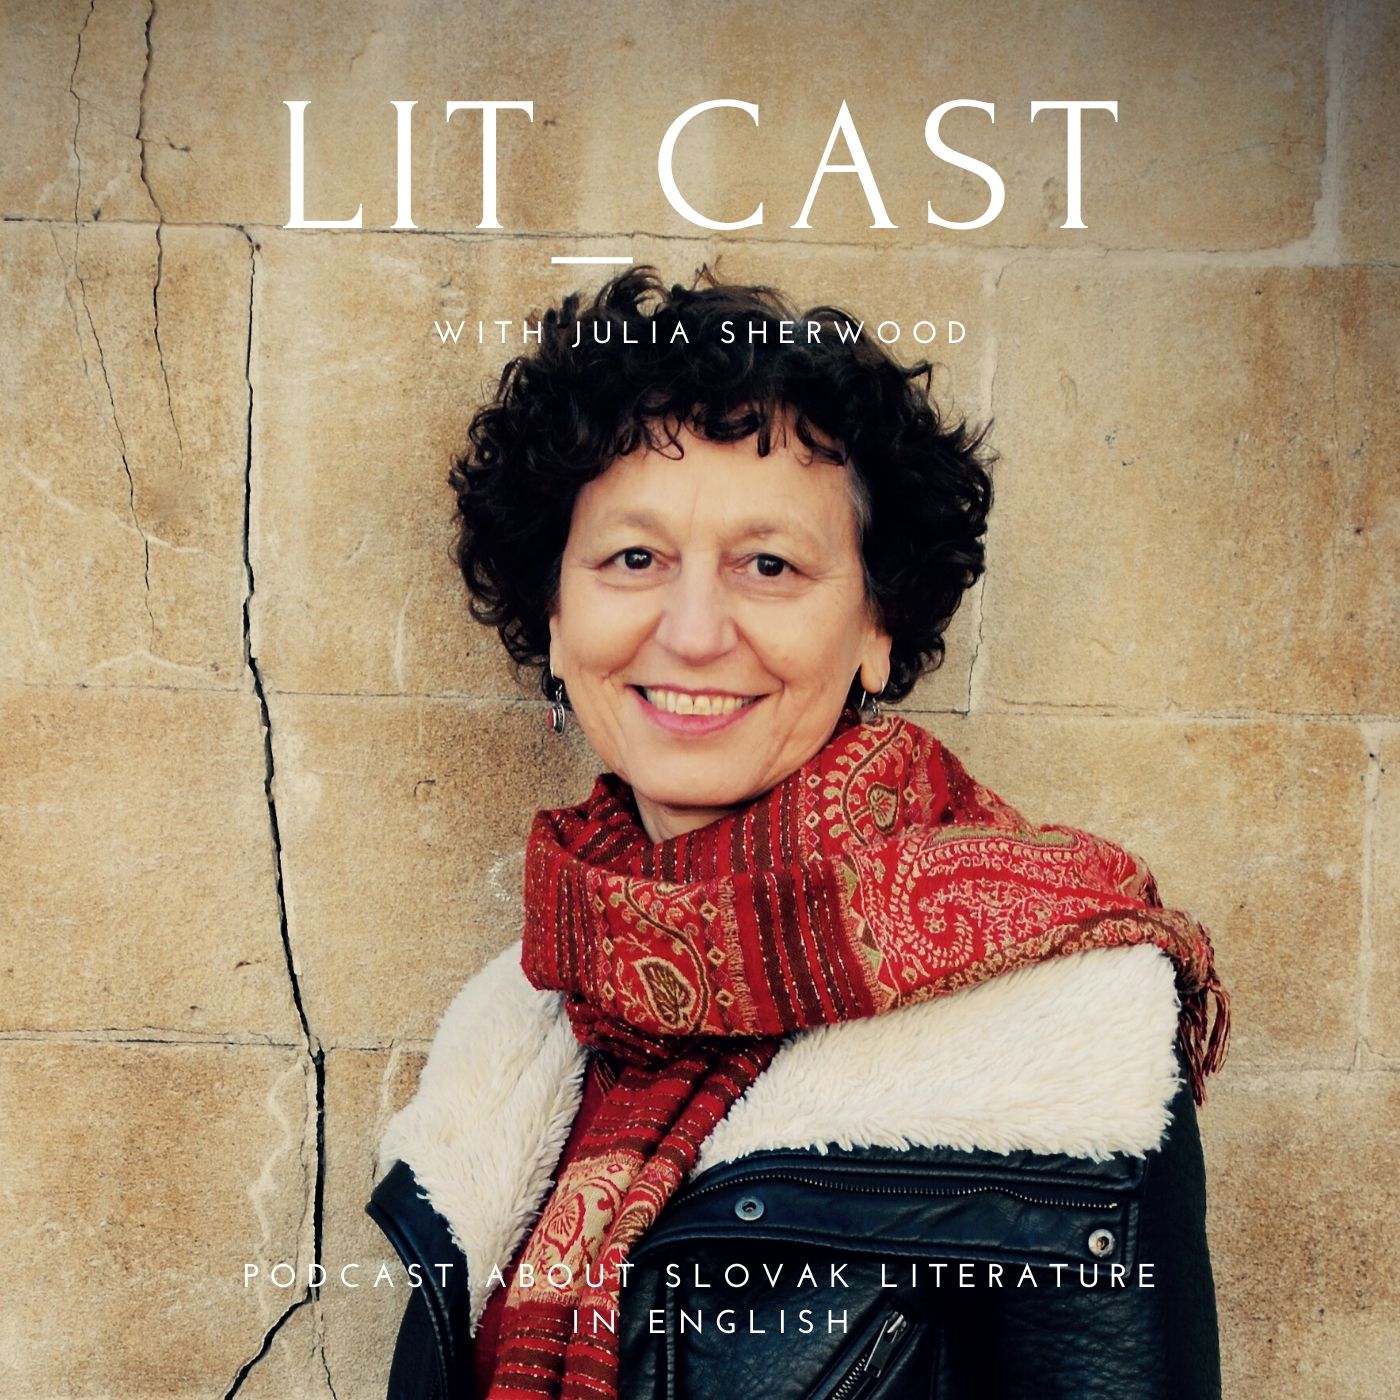 Lit cast Slovakia in English cover photo by Marzena Pogorzaly